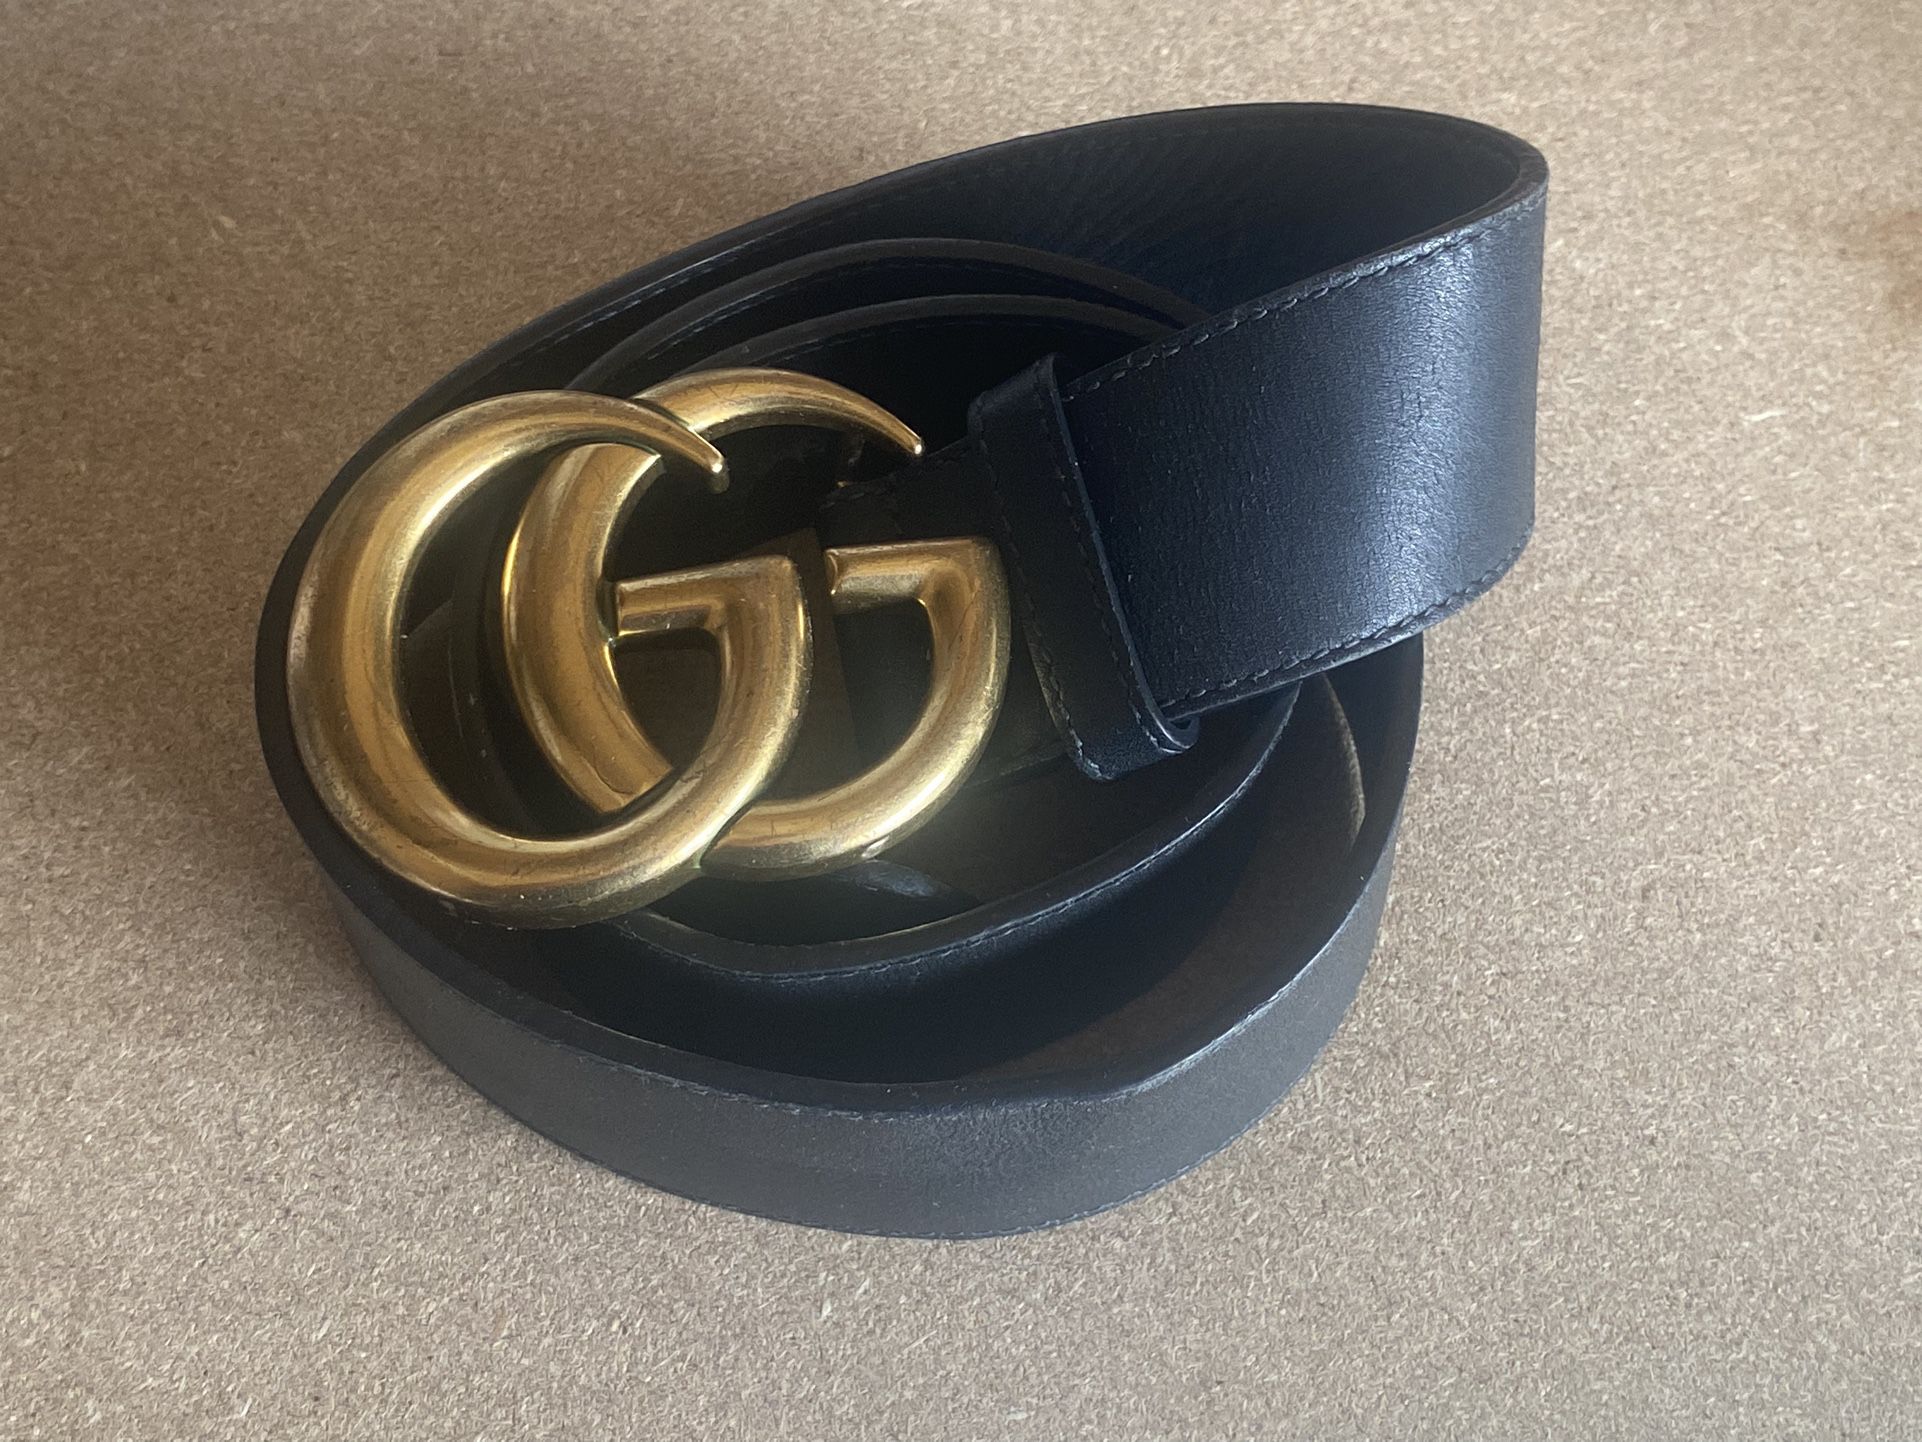 Gucci Belt - Black - Authentic